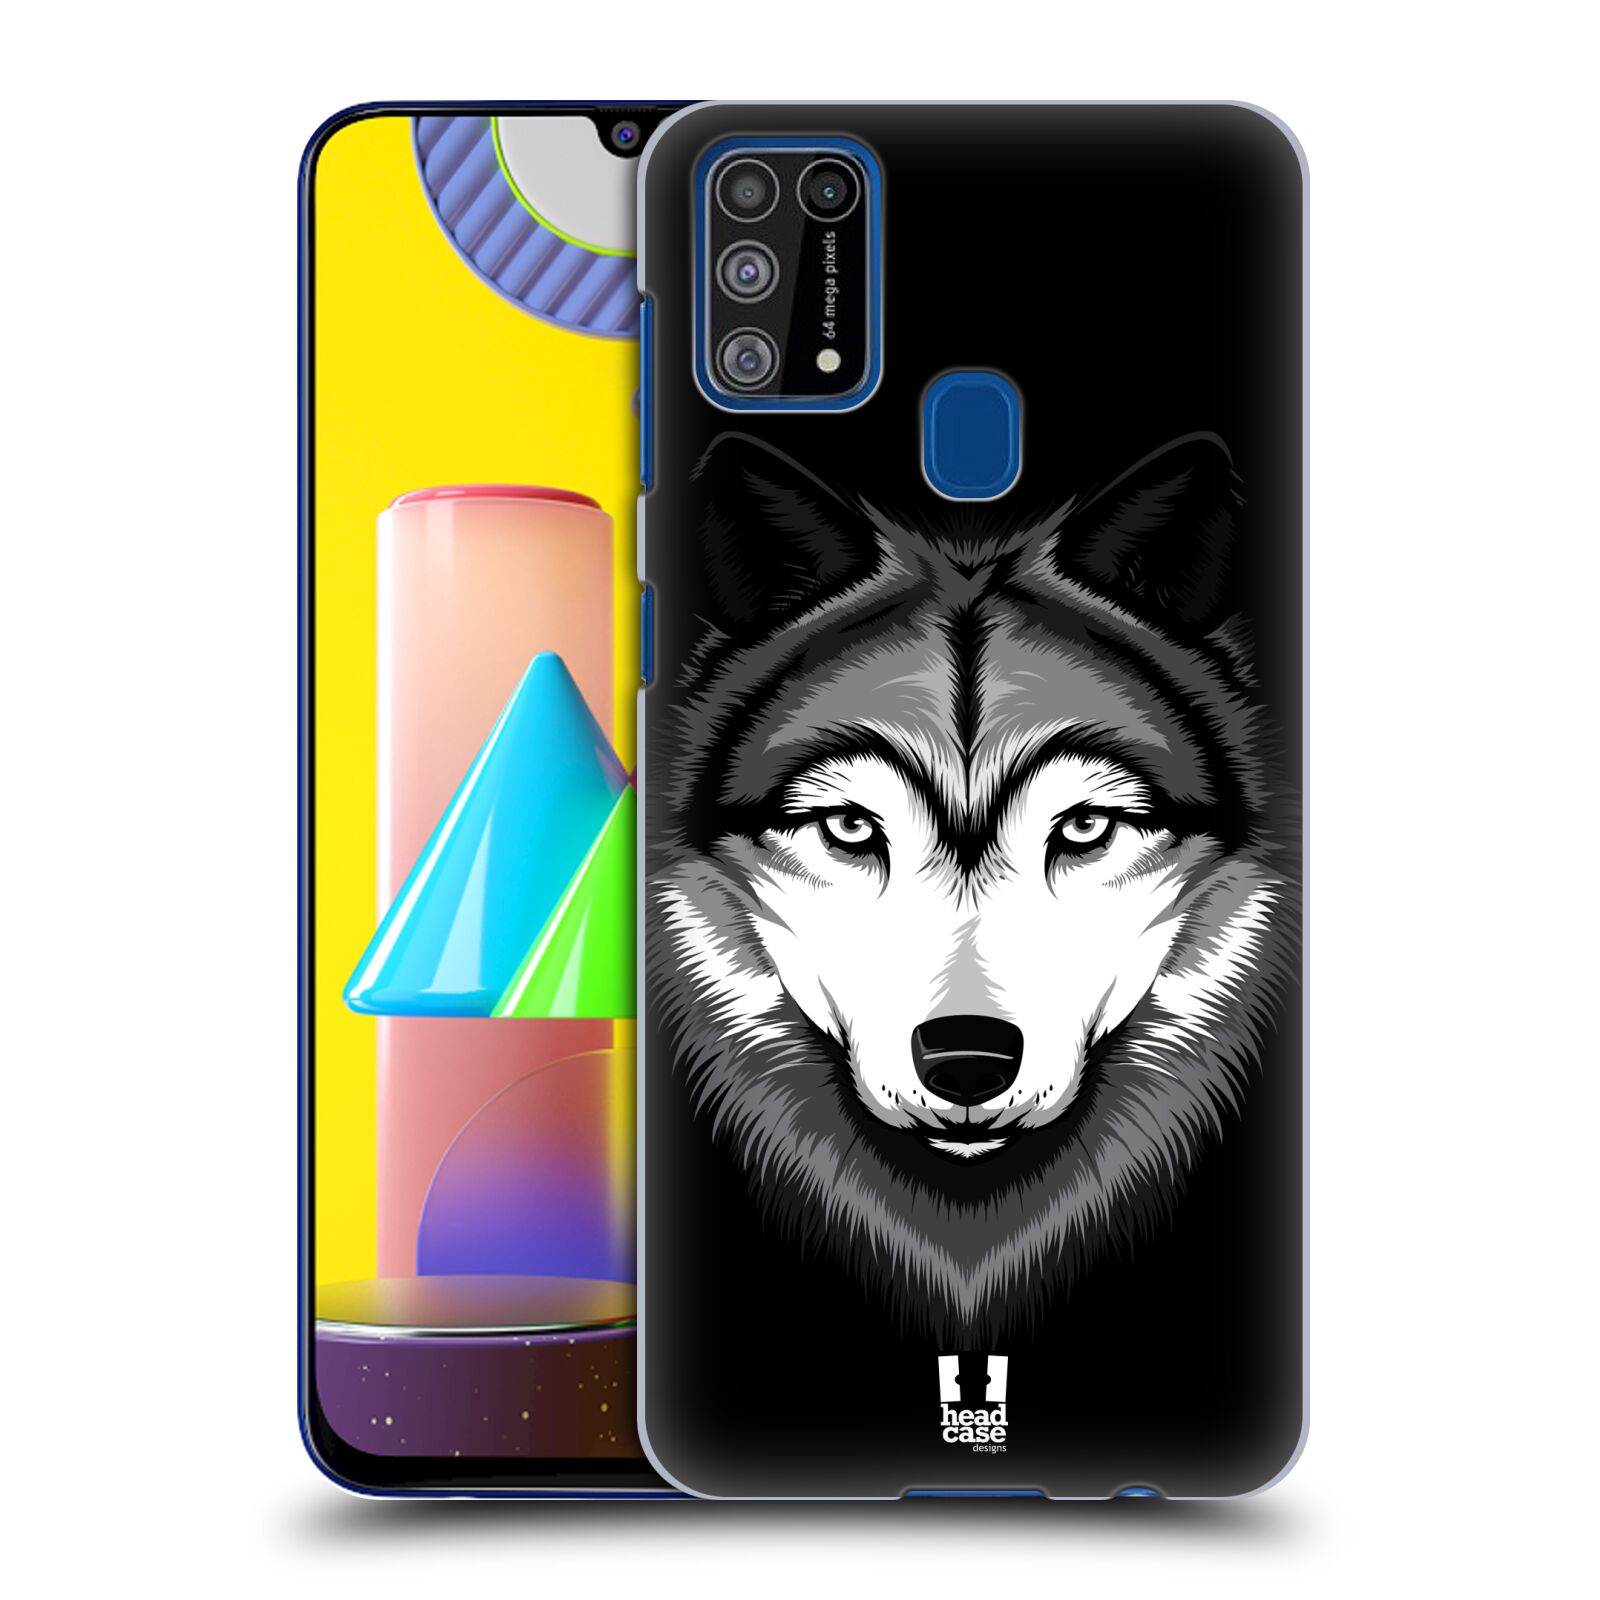 Plastový obal HEAD CASE na mobil Samsung Galaxy M31 vzor Zvíře kreslená tvář 2 vlk